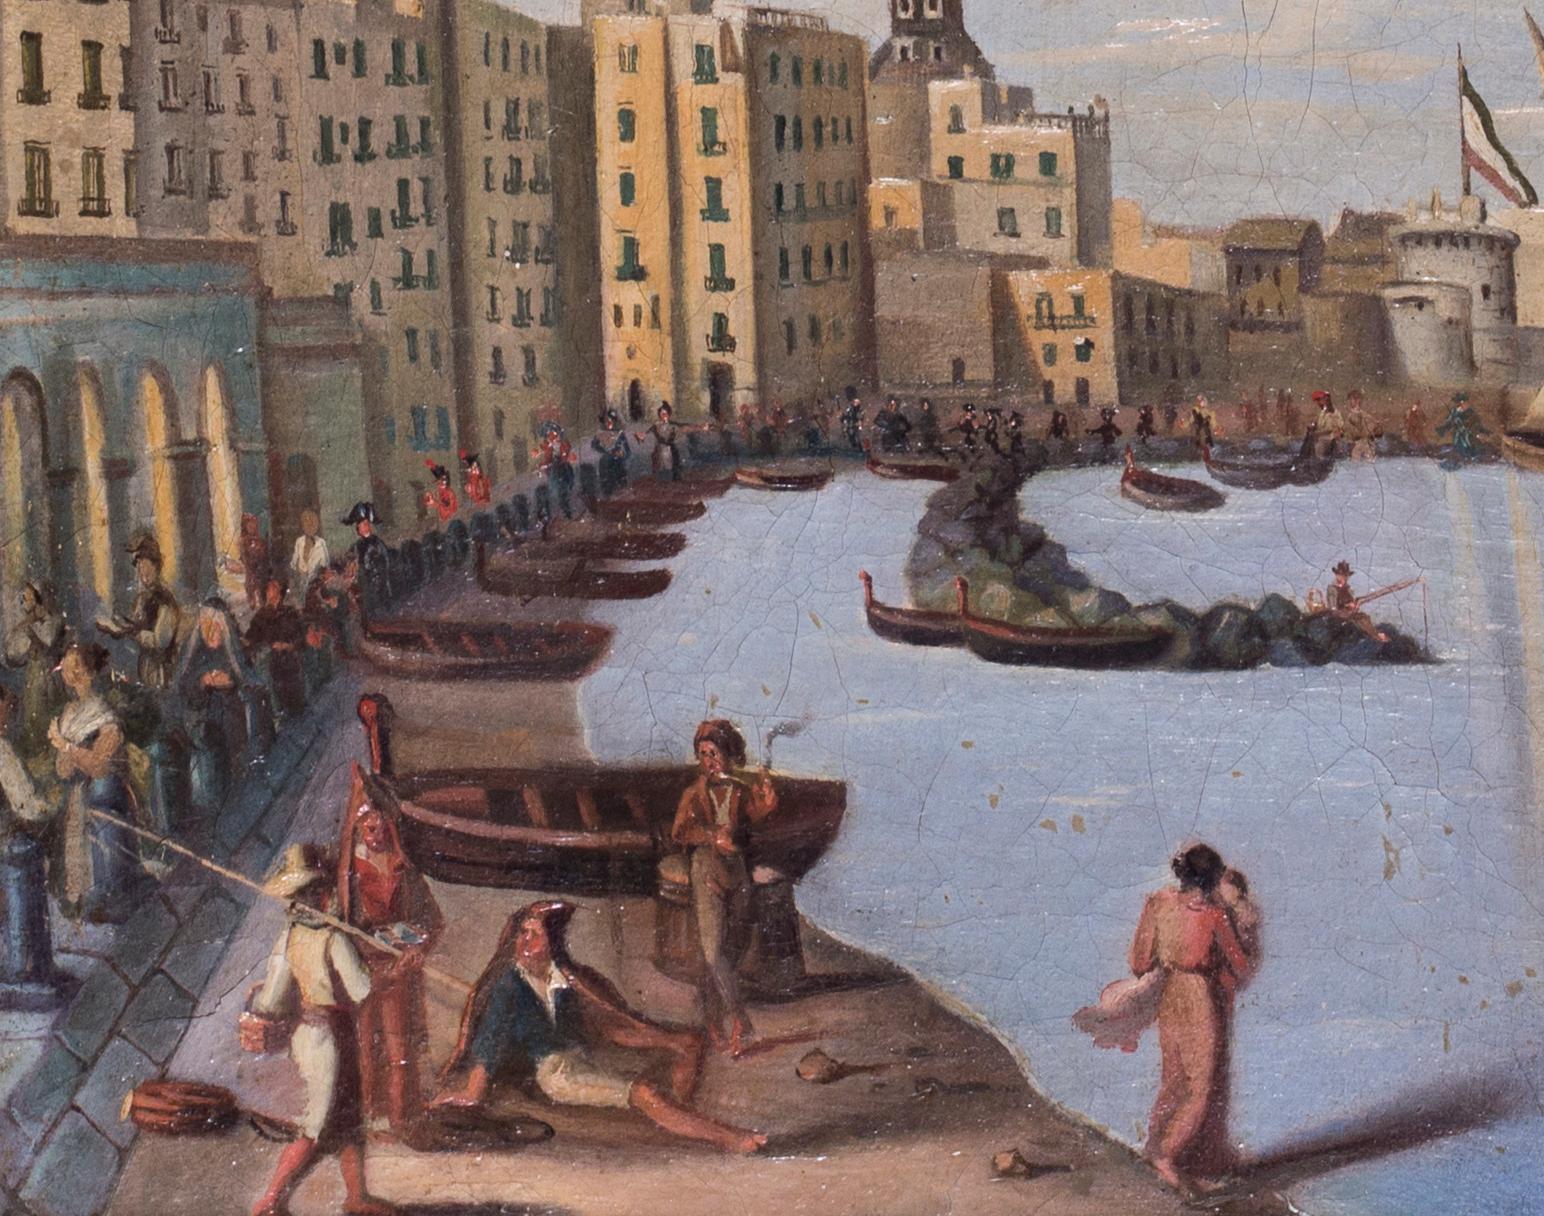 Naples während der napoleonischen Besatzung, Gemälde in Öl auf Leinwand, um 1810 (Grau), Landscape Painting, von Unknown